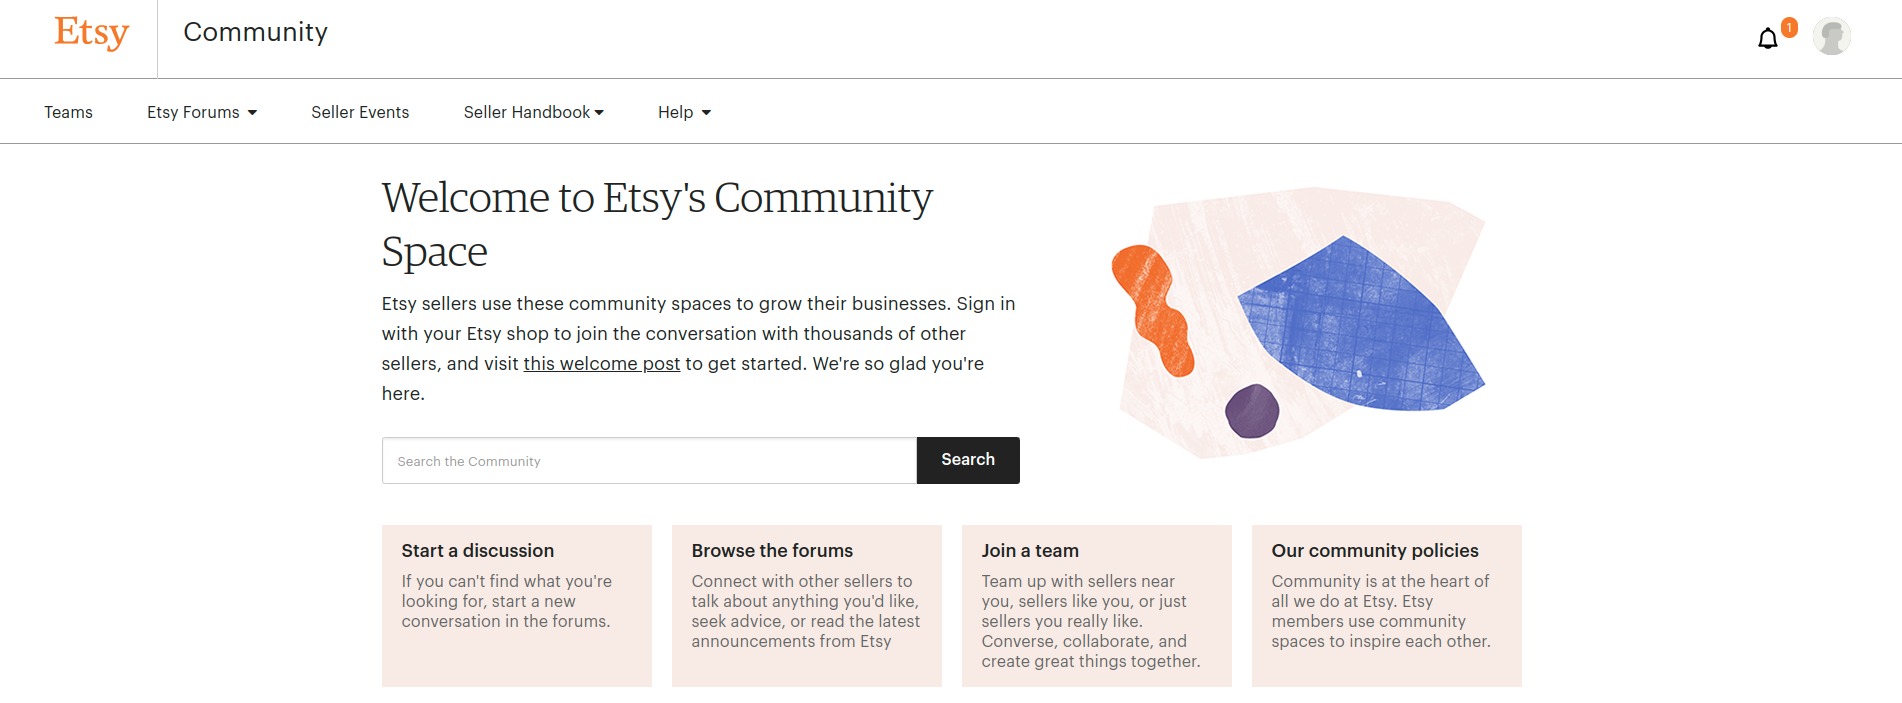 Etsy community homepage